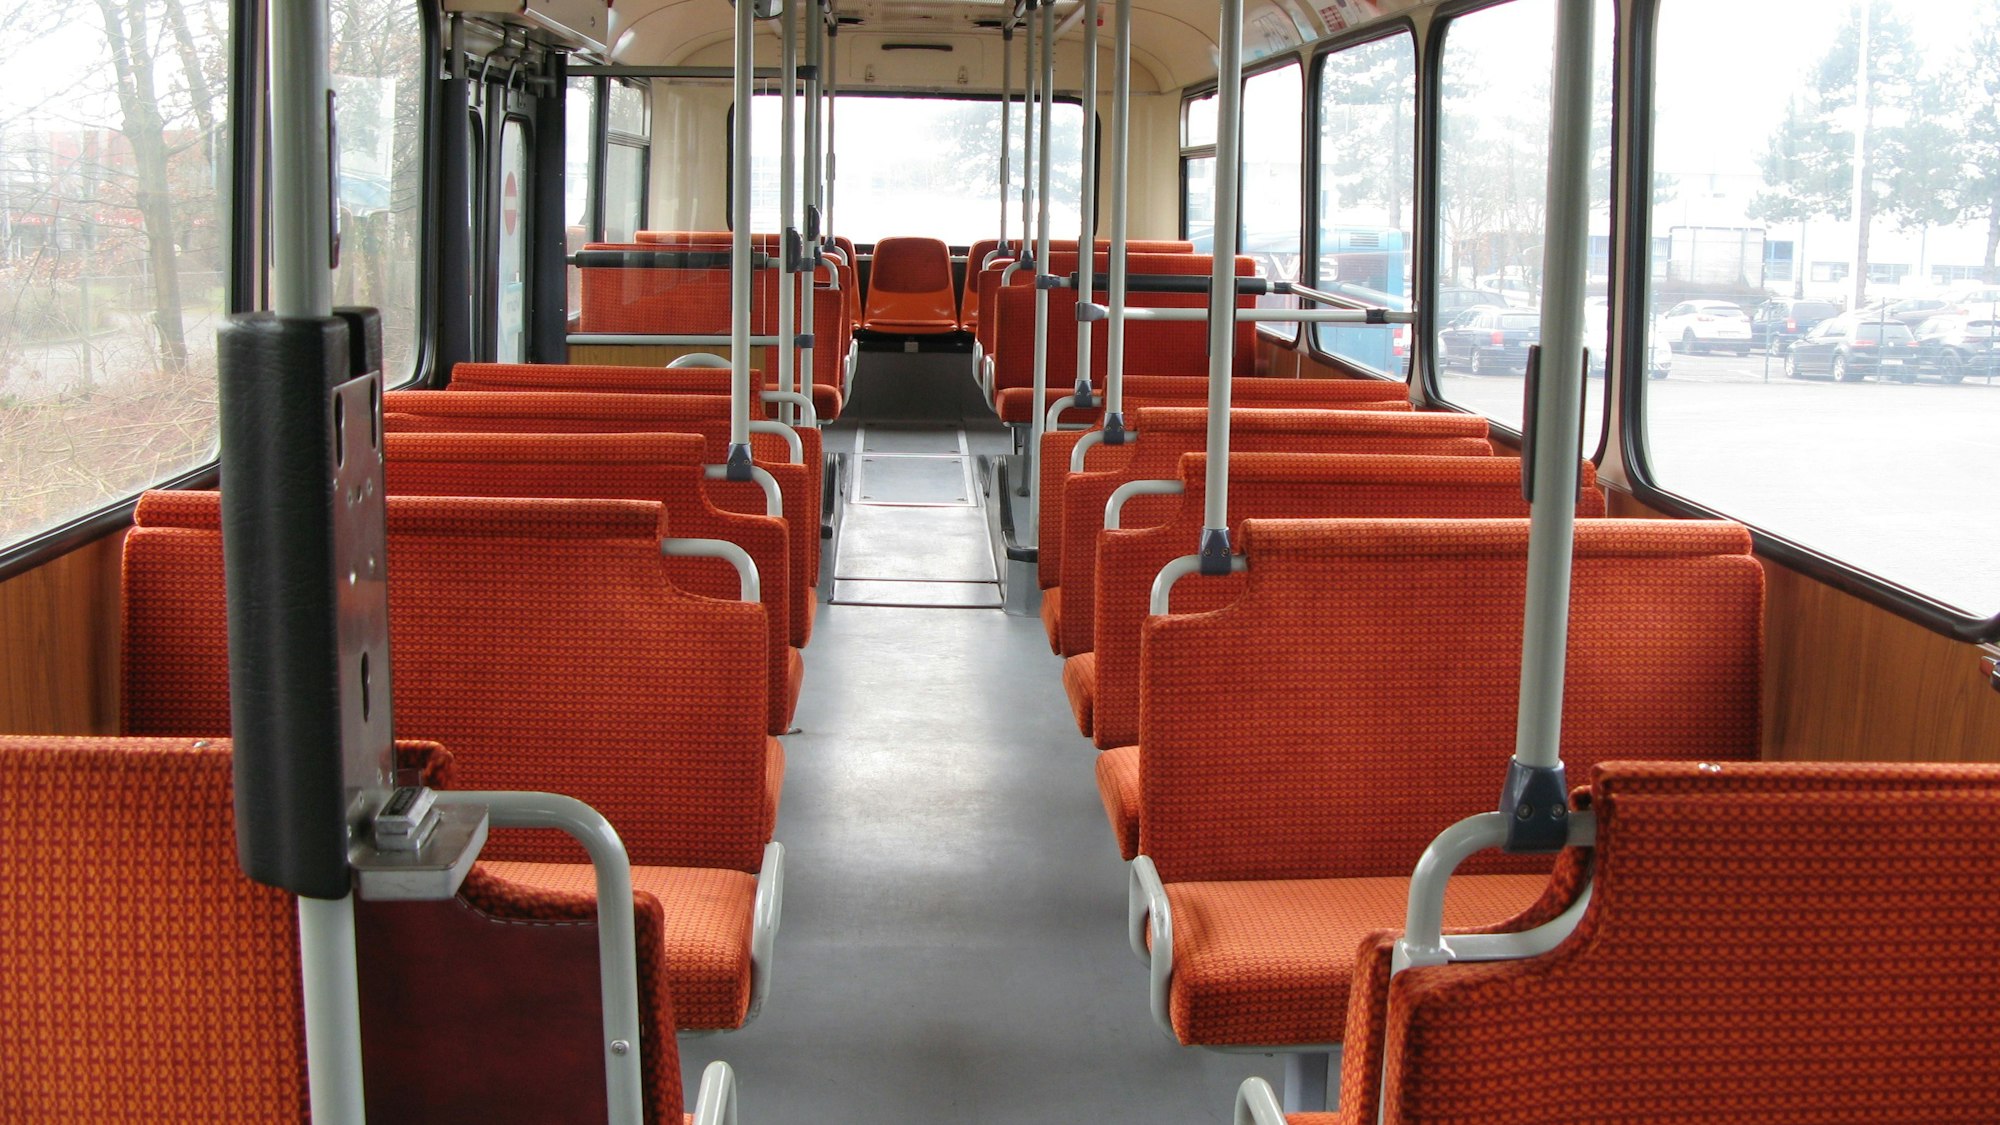 Der Blick ins Innere des Busses zeigt den Gang, Haltestangen und die Sitzbänke, die mit einem leuchtend-orangefarbenen Stoff bezogen sind.